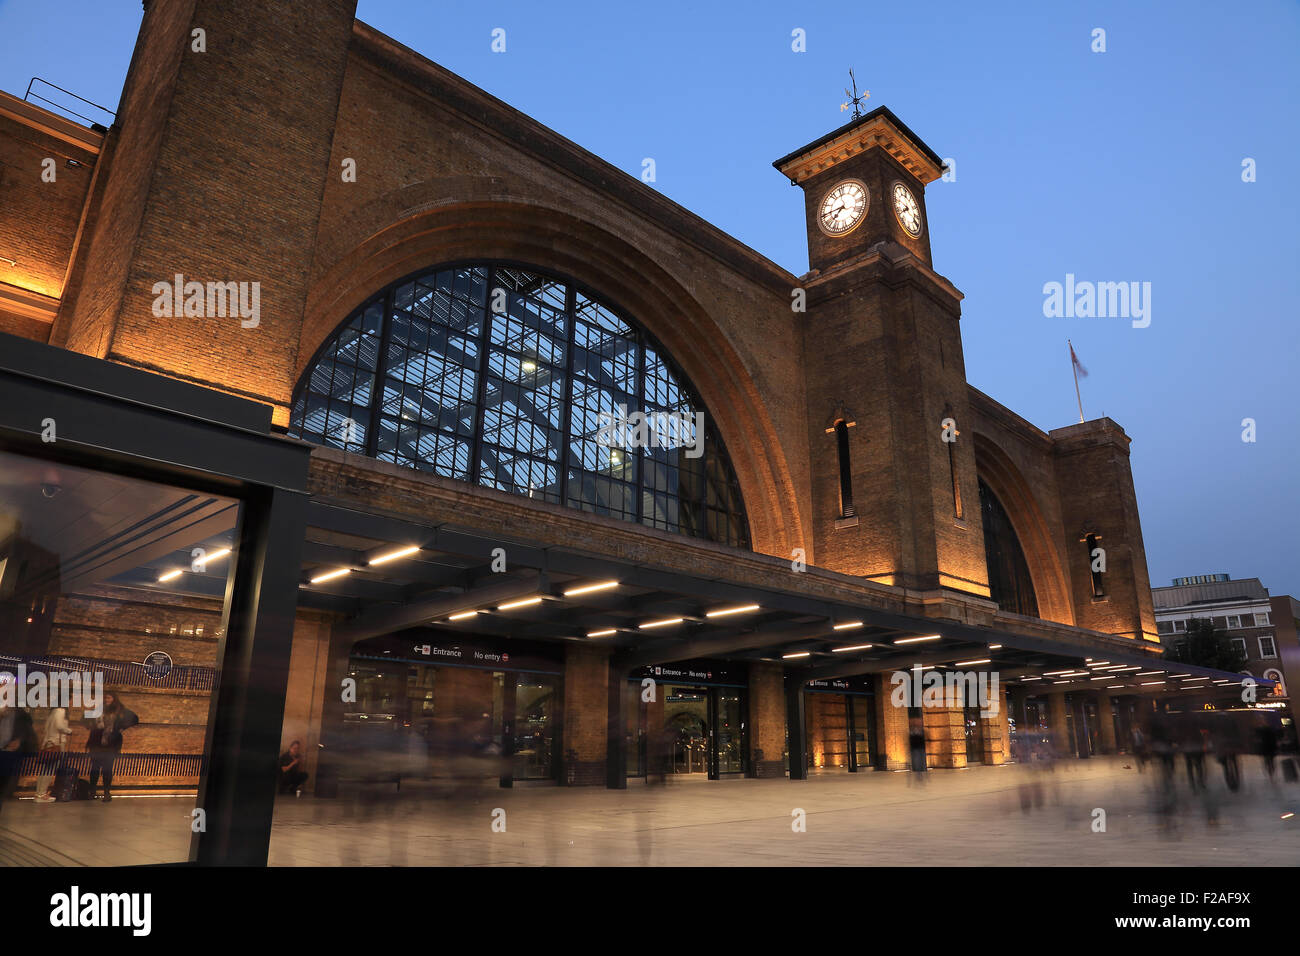 Eine Nachtaufnahme des kürzlich renovierten Kings Cross Railway Station in London, England Stockfoto